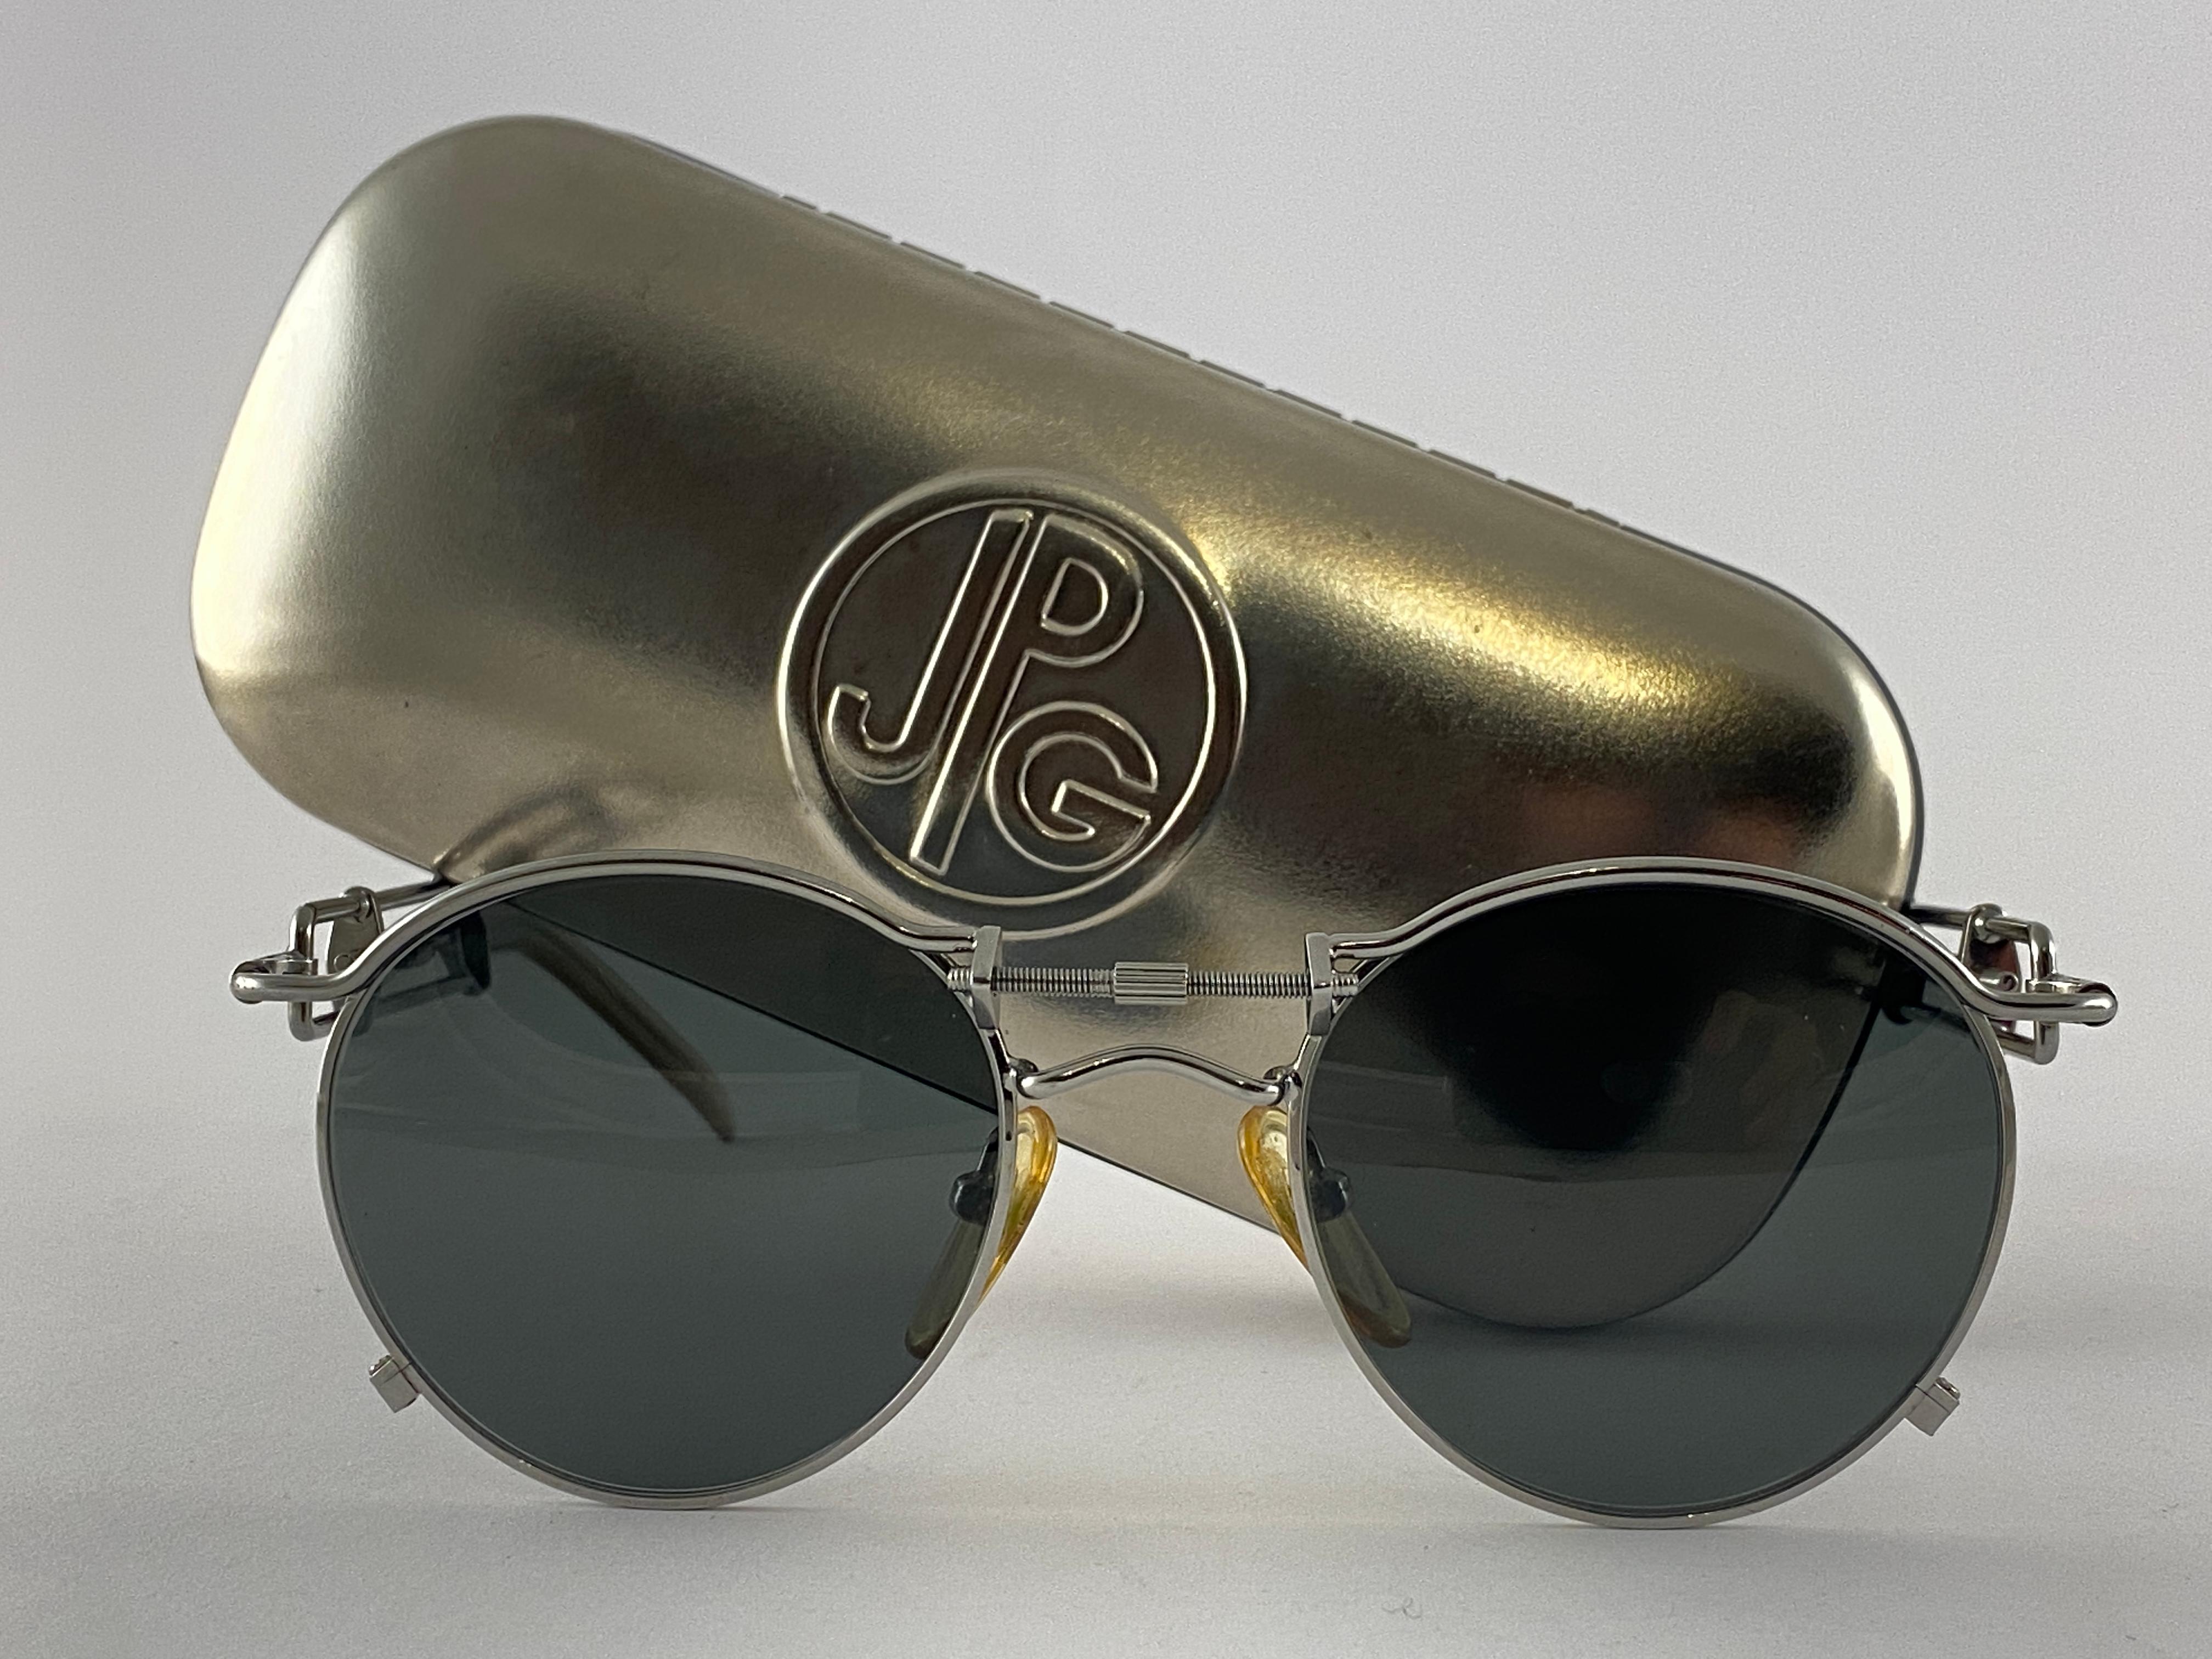 Vintage Jean Paul Gaultier 56 0174 Silber Details Rahmen. 
Dunkelgraue Gläser vervollständigen einen tragbaren JPG-Look.

Erstaunliches Design mit starken, aber raffinierten Details.
Design und Herstellung um 1900.
Leichte lagerungsbedingte